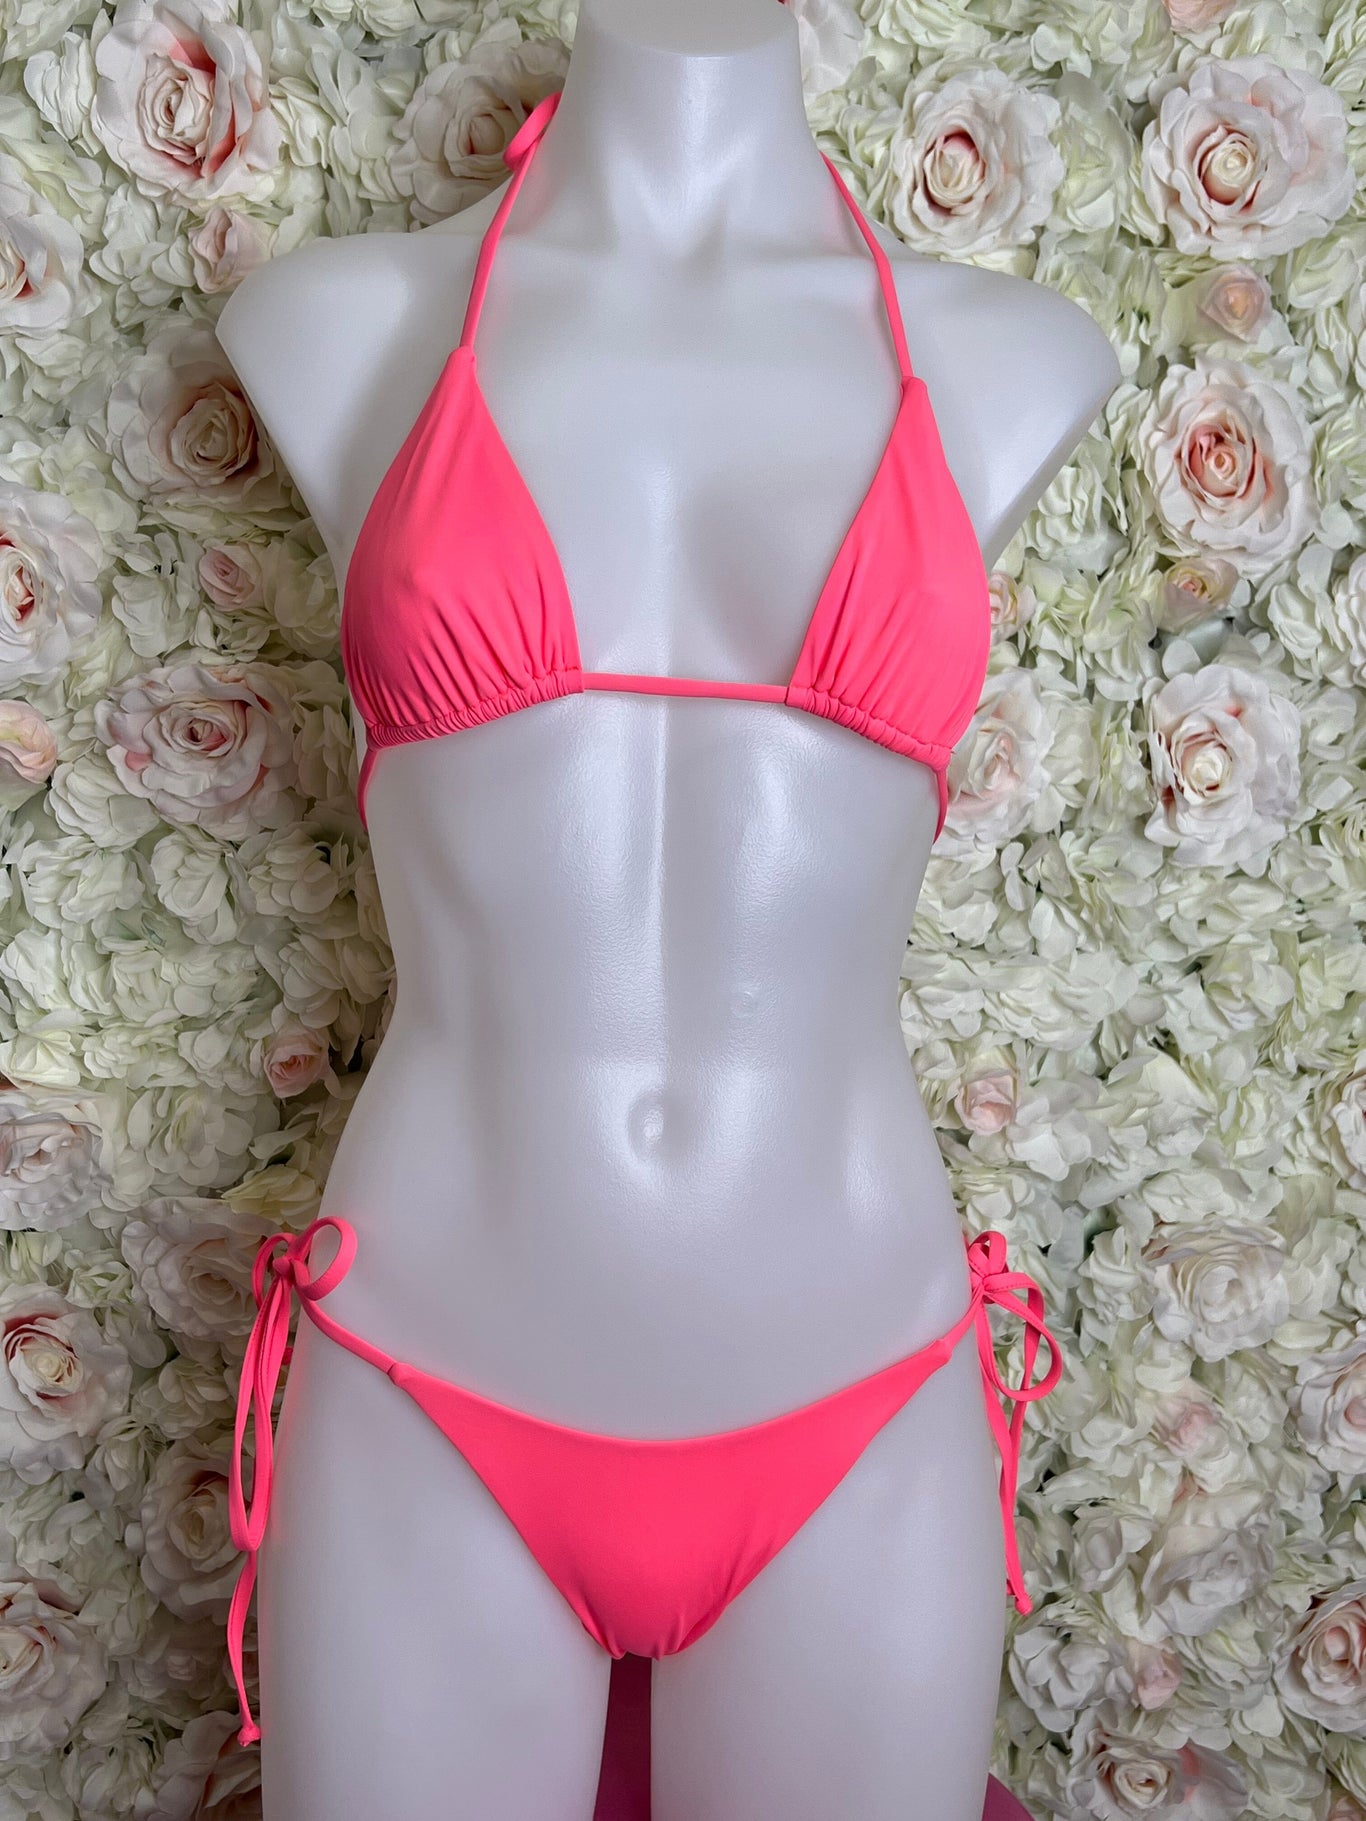 SAMPLE 18 - Berry Beachy Swimwear